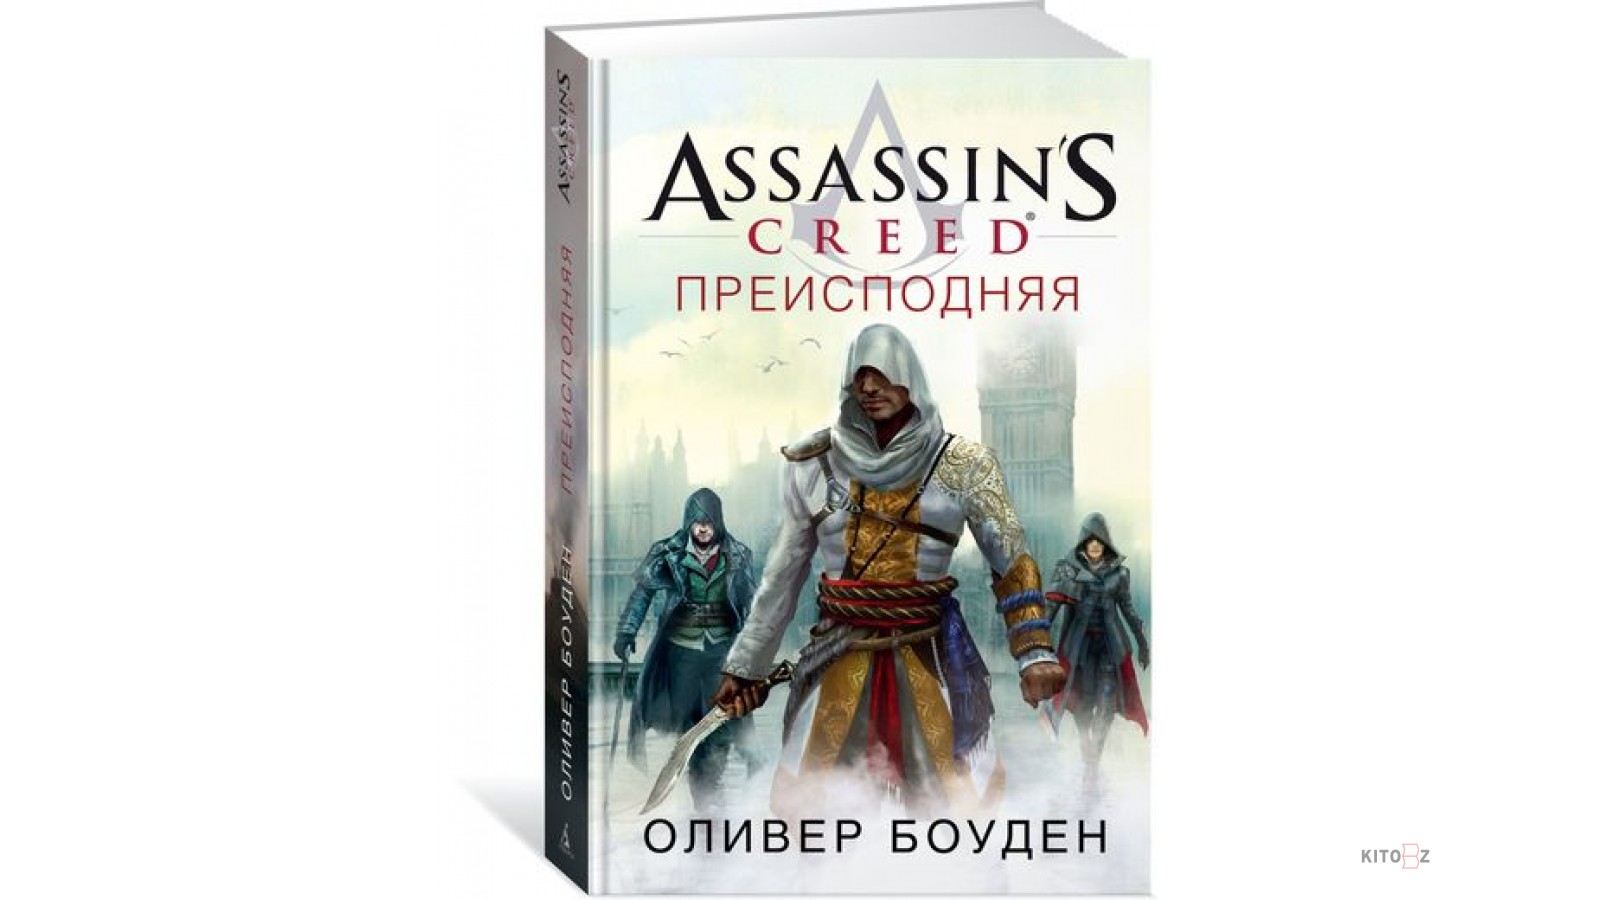 Оливер Боуден. Assassin’s Creed Оливер Боуден книга. Ассасин братство книга. Оливер Боуден фото. Книга мастер ассасин